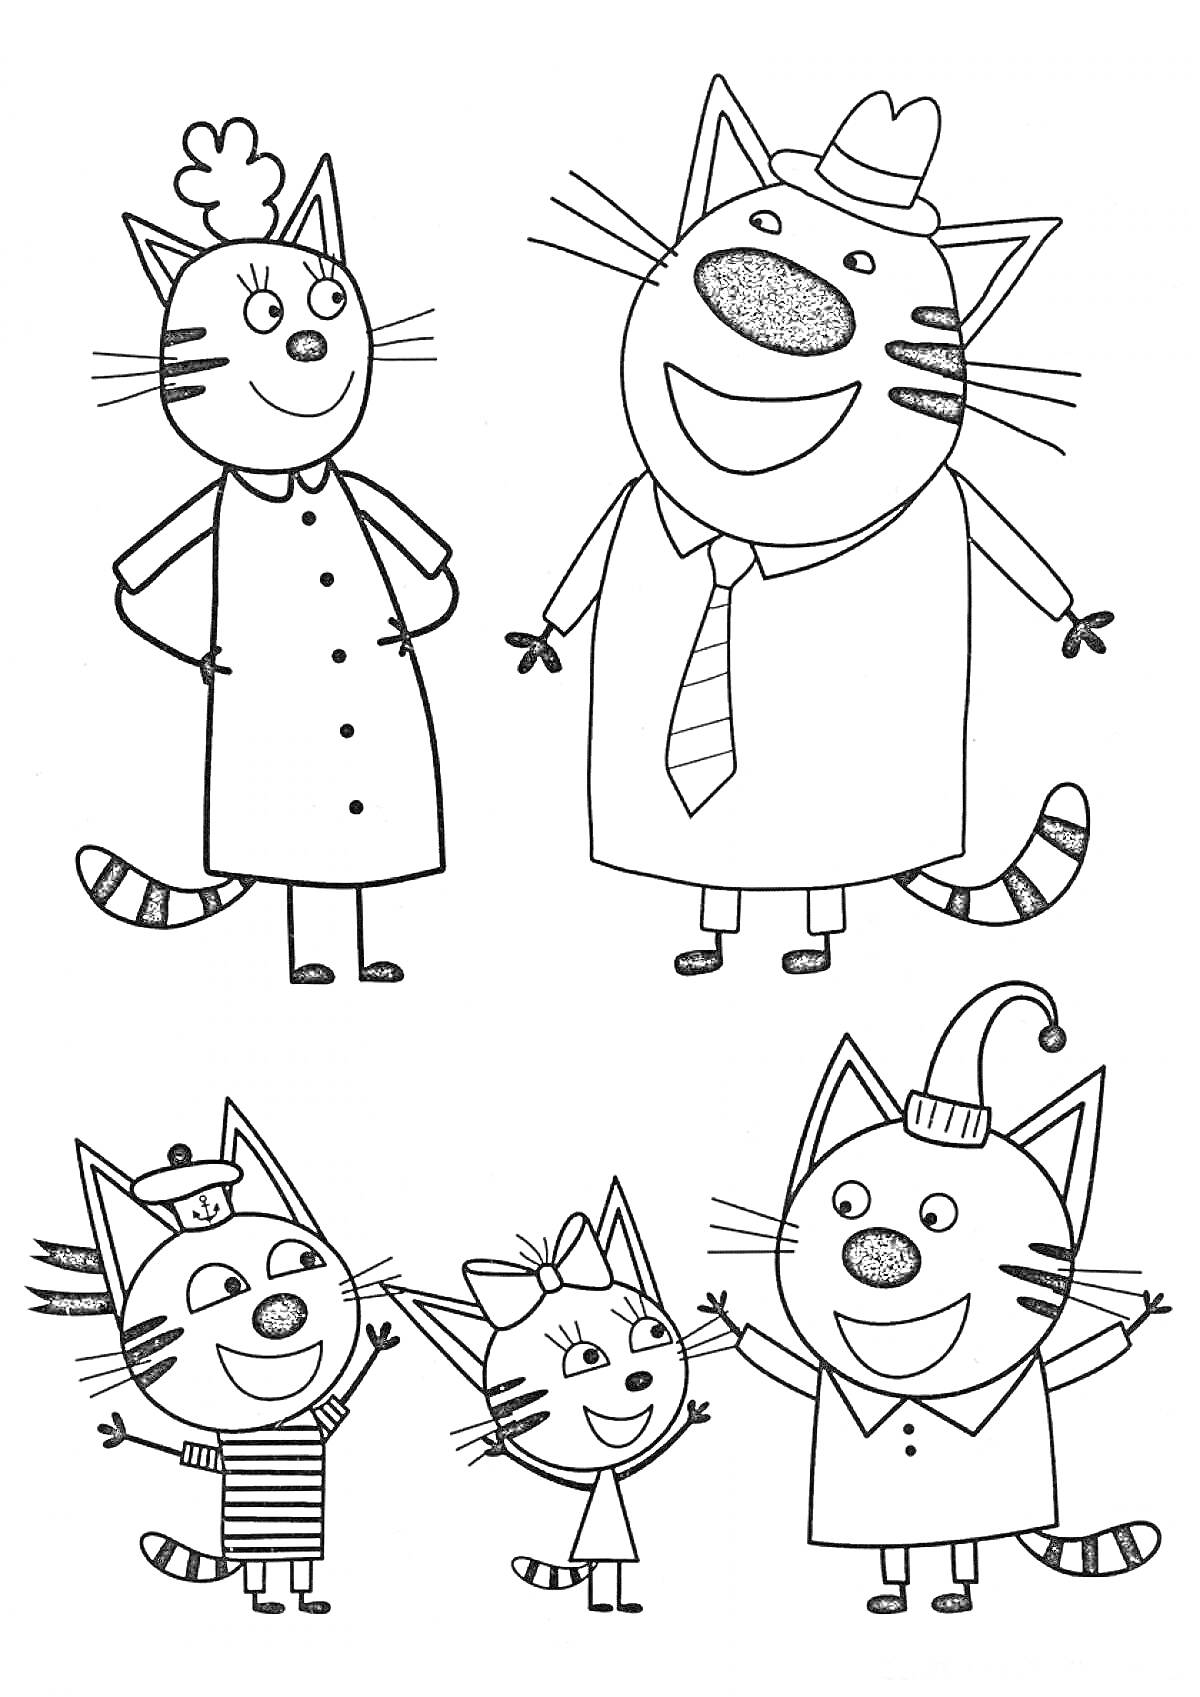 Раскраска Три Кота: семья котов, включая маму, папу и трёх котят в разных костюмах (один в полосатой футболке и шапке, второй с бантиком, третий с шапкой)